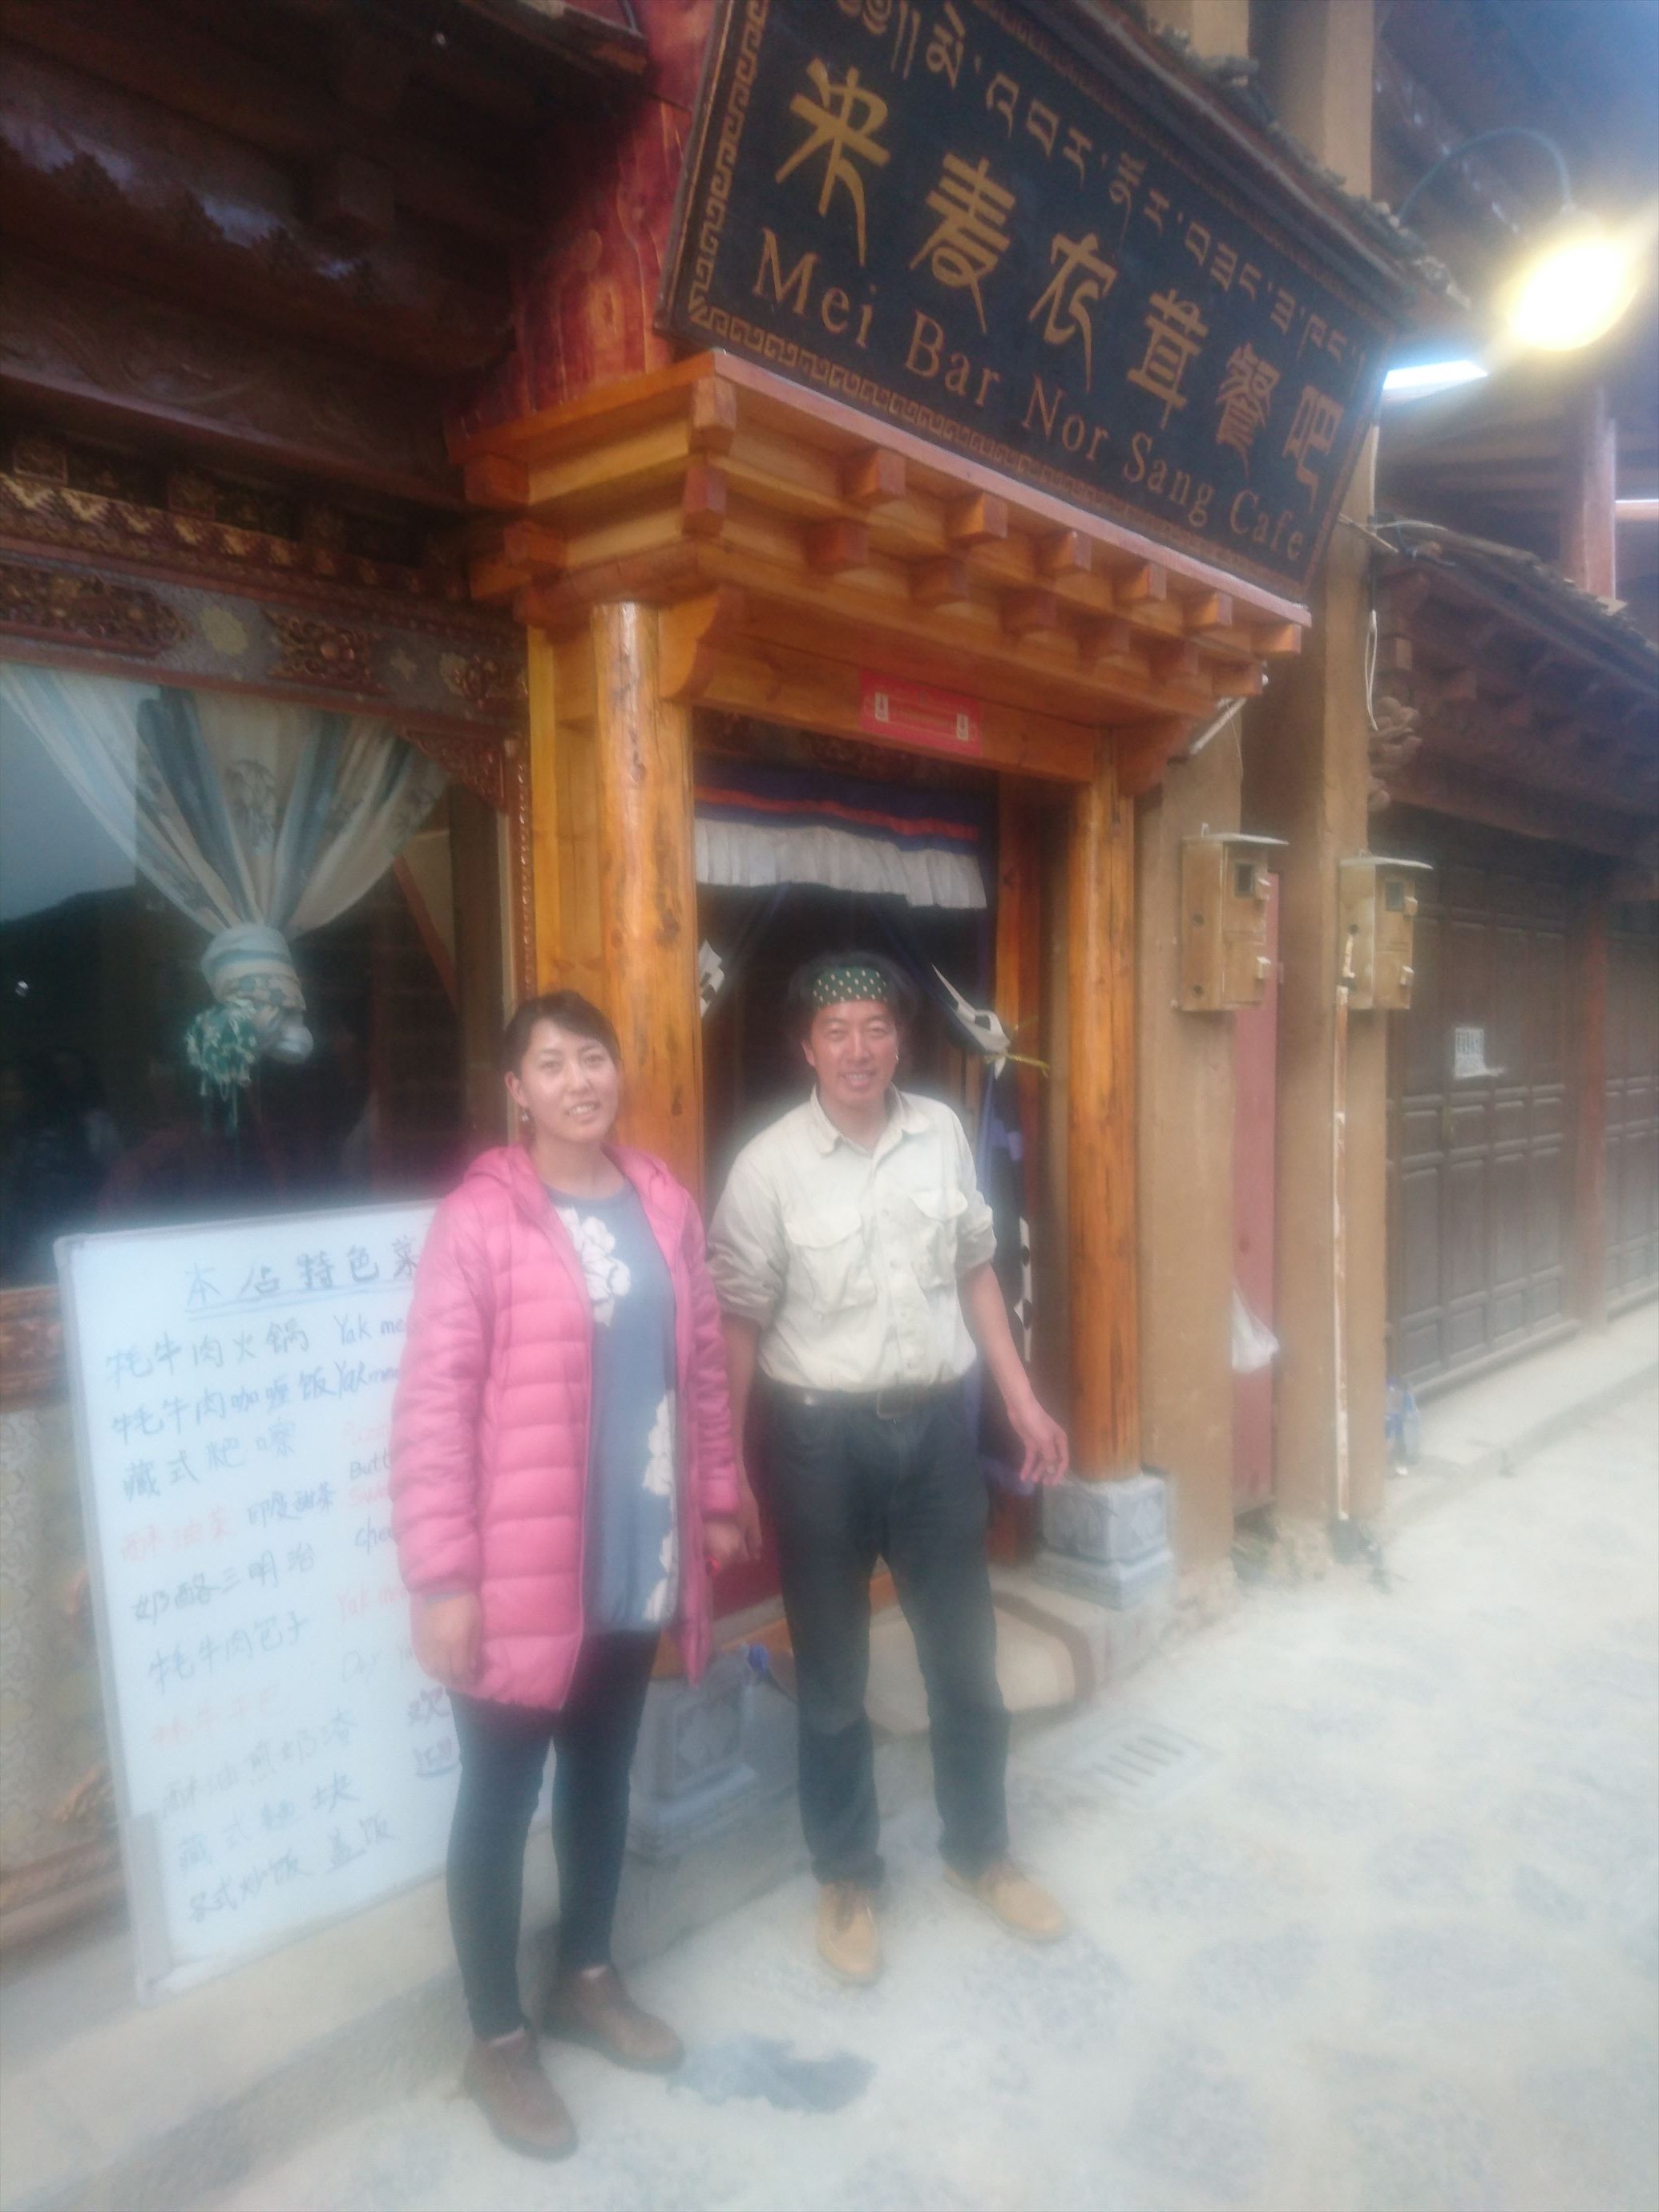 シャングリラで味わう茸料理とシャングリラビール 雲南省旅行6